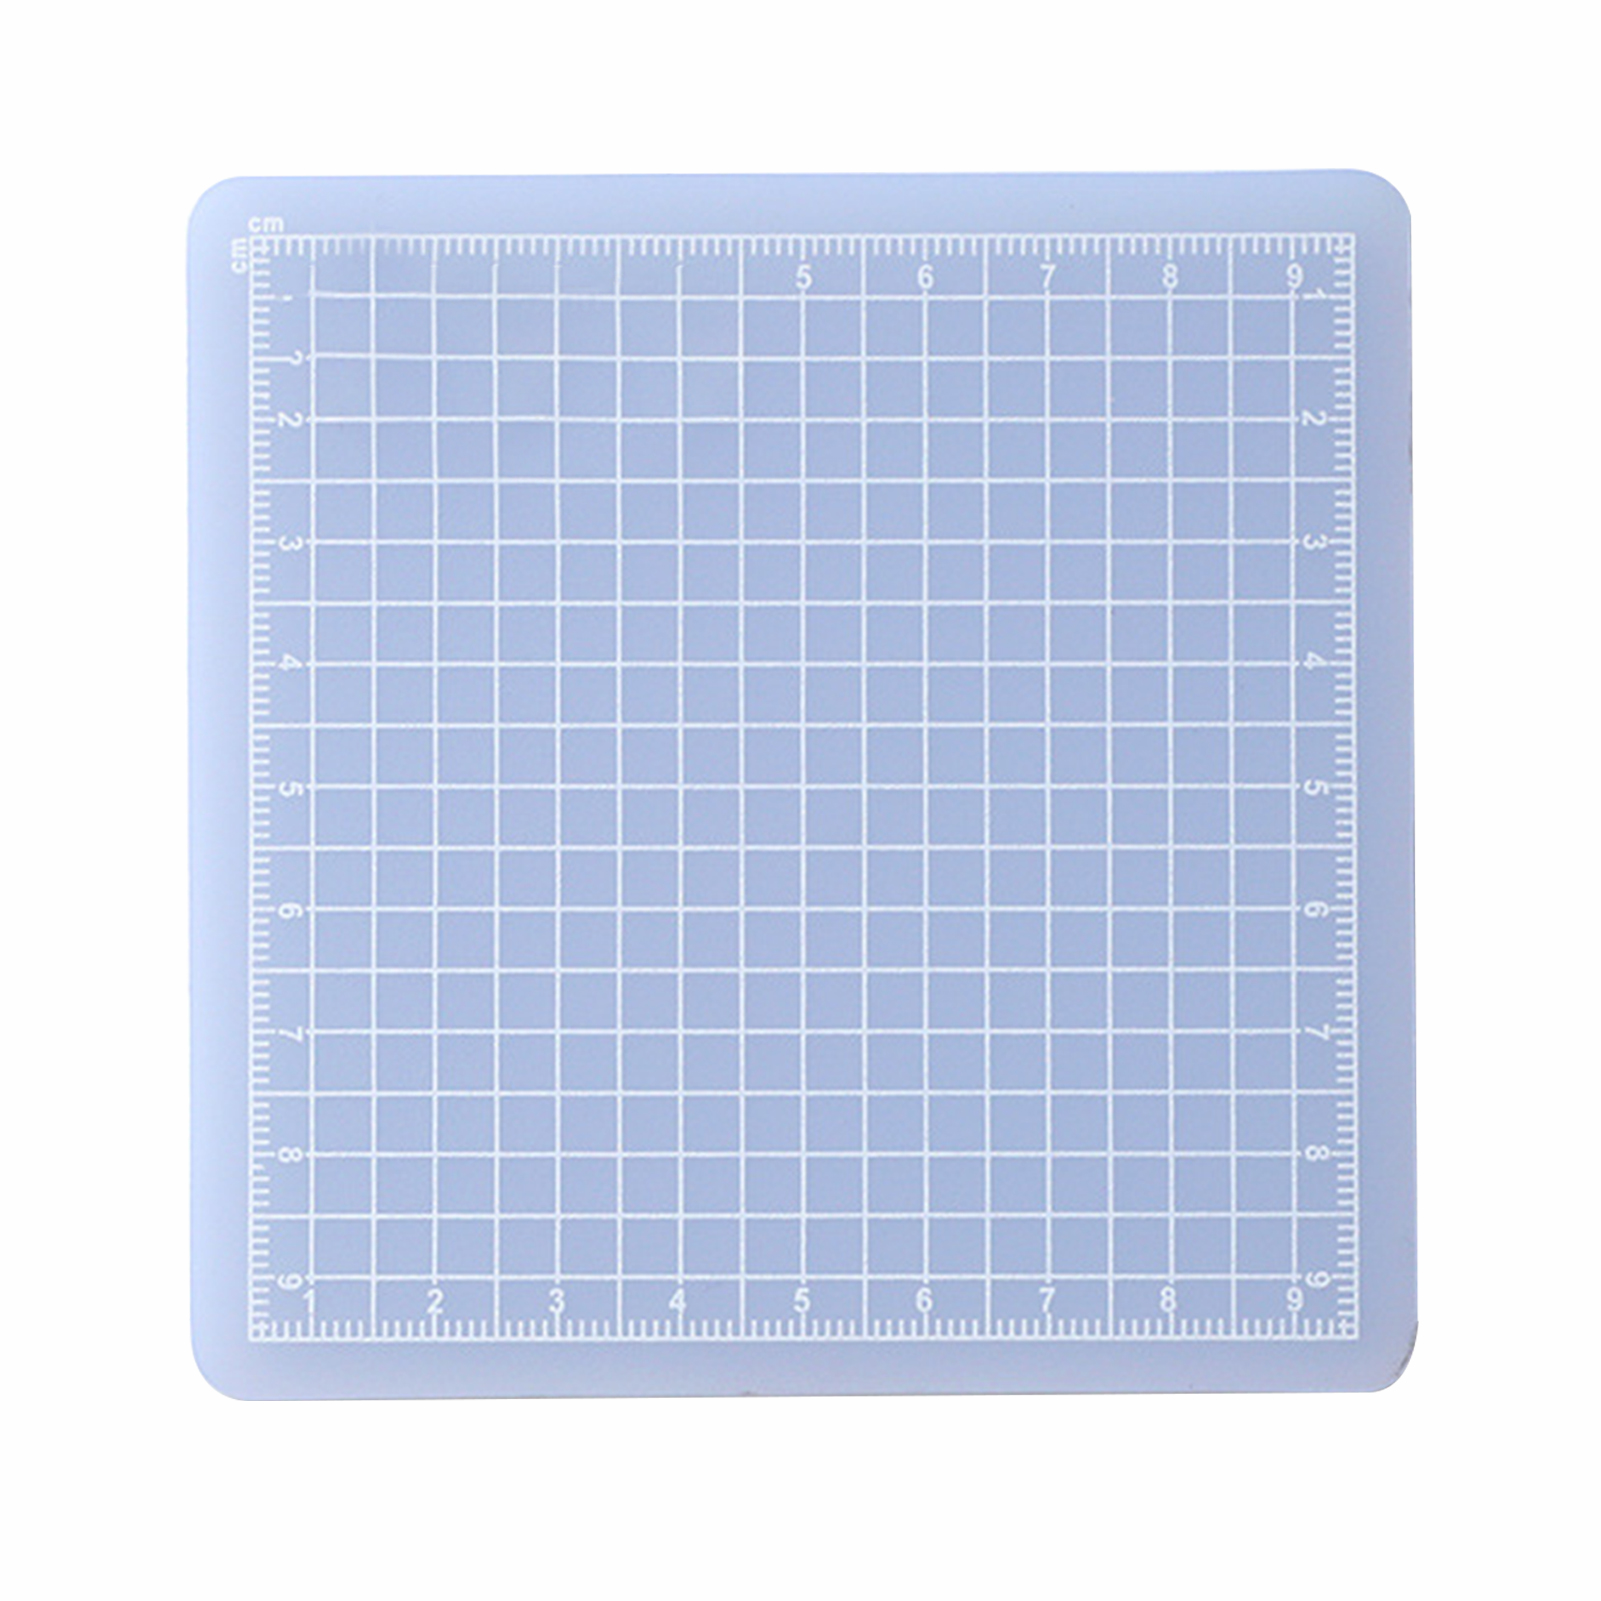 도구 커팅 매트 스크랩북을위한 DIY 공예 비 슬립 양면 패드 바느질 홈 오피스 PVC 액세서리 실용 전문가